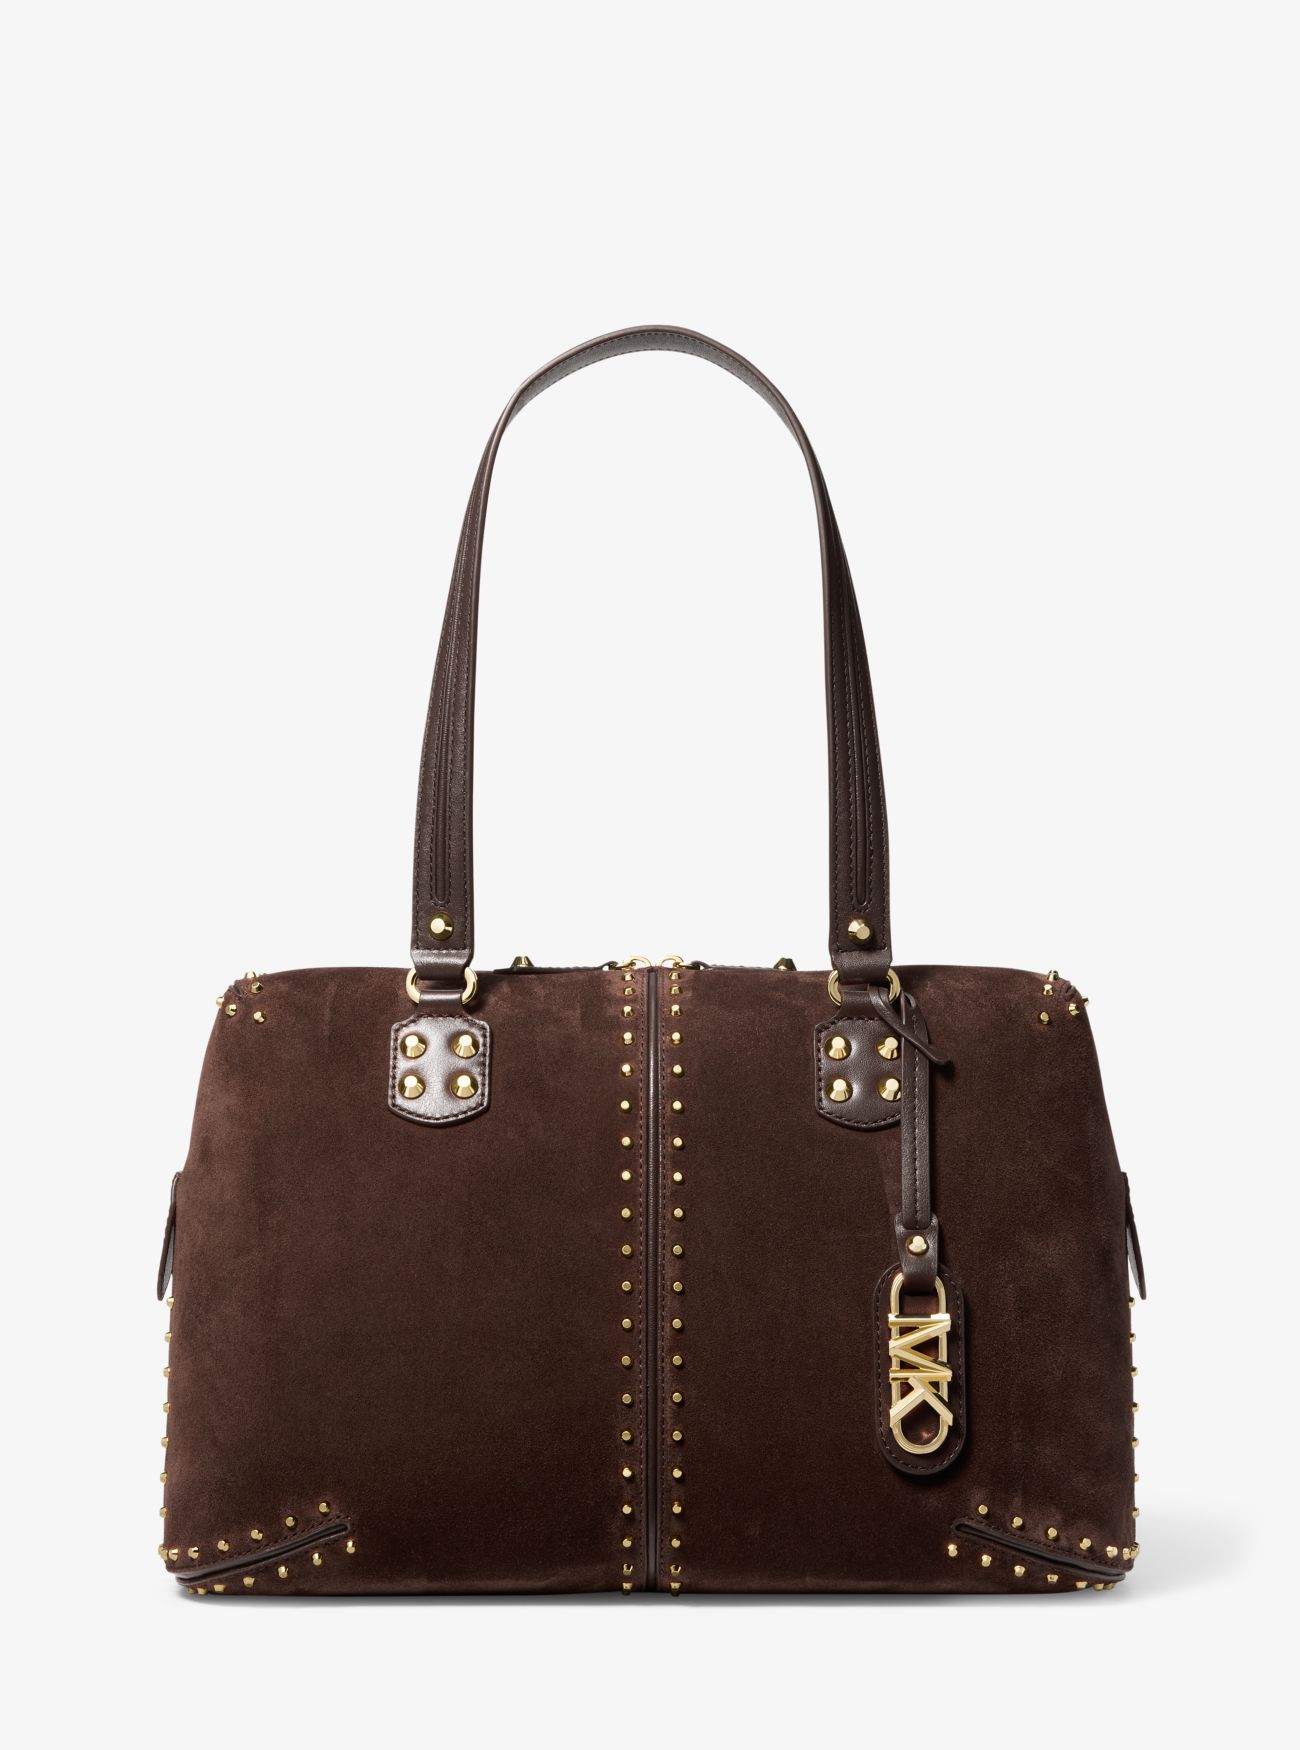 MK Astor Large Studded Leather Tote Bag - Chocolate - Michael Kors